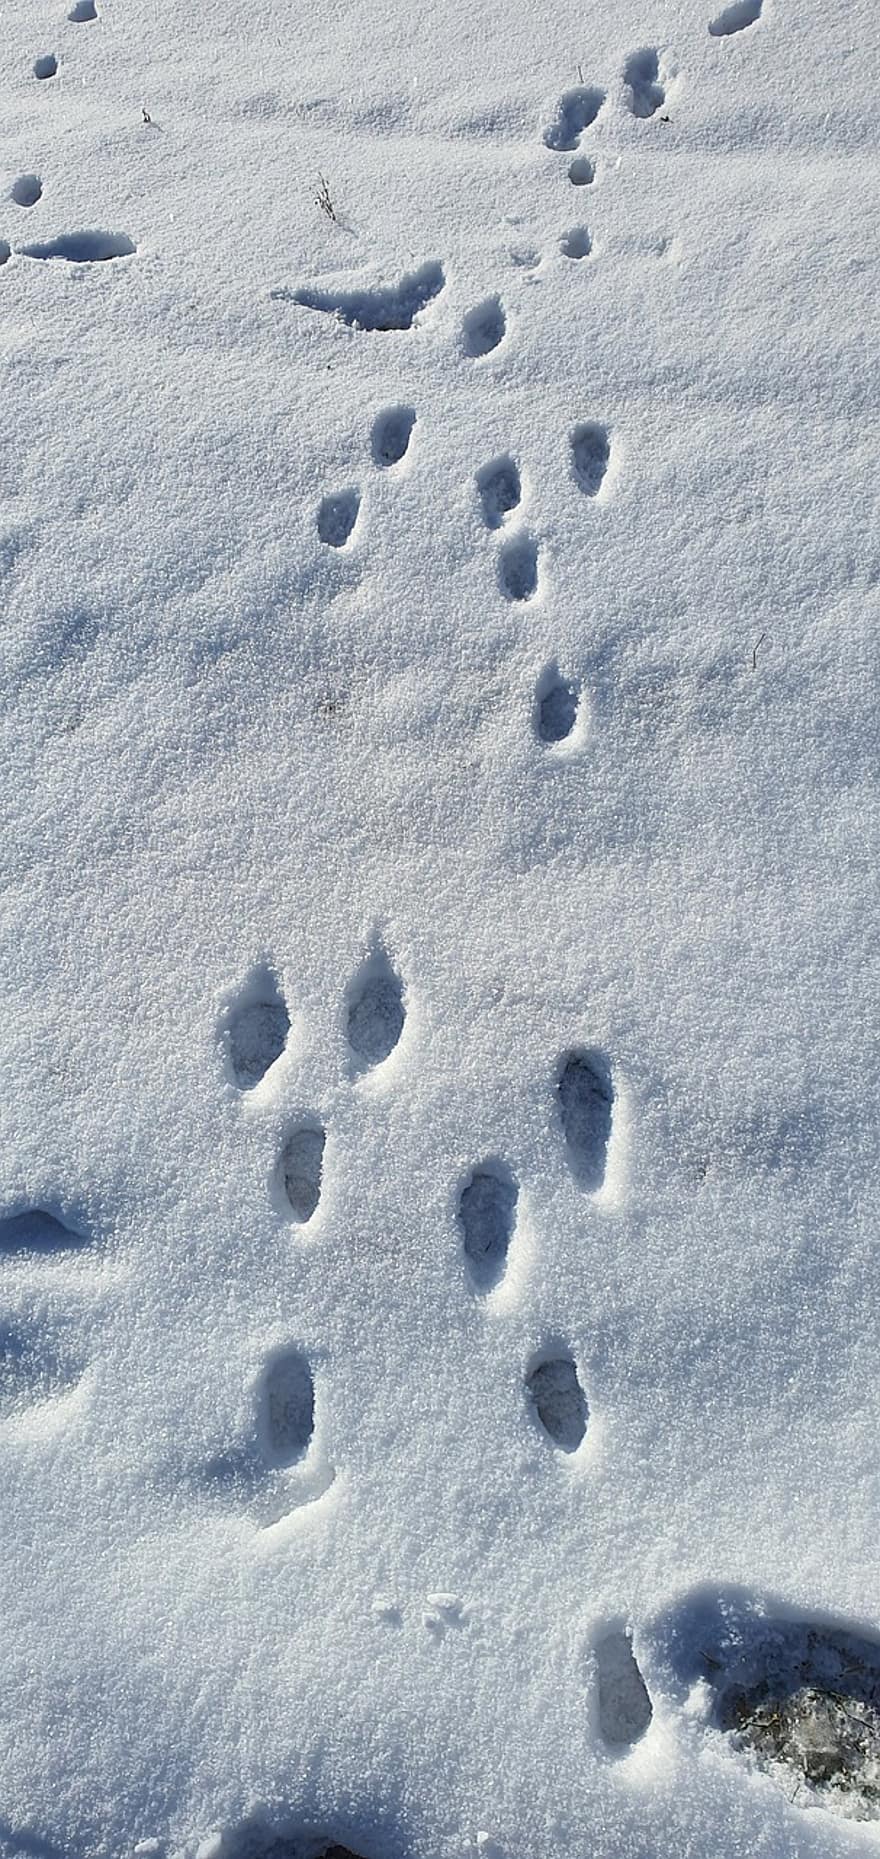 tuyết, dấu chân, mùa đông, tầng lớp, theo dõi, dấu ấn, mẫu, Mùa, đi dạo, cận cảnh, lối đi bộ